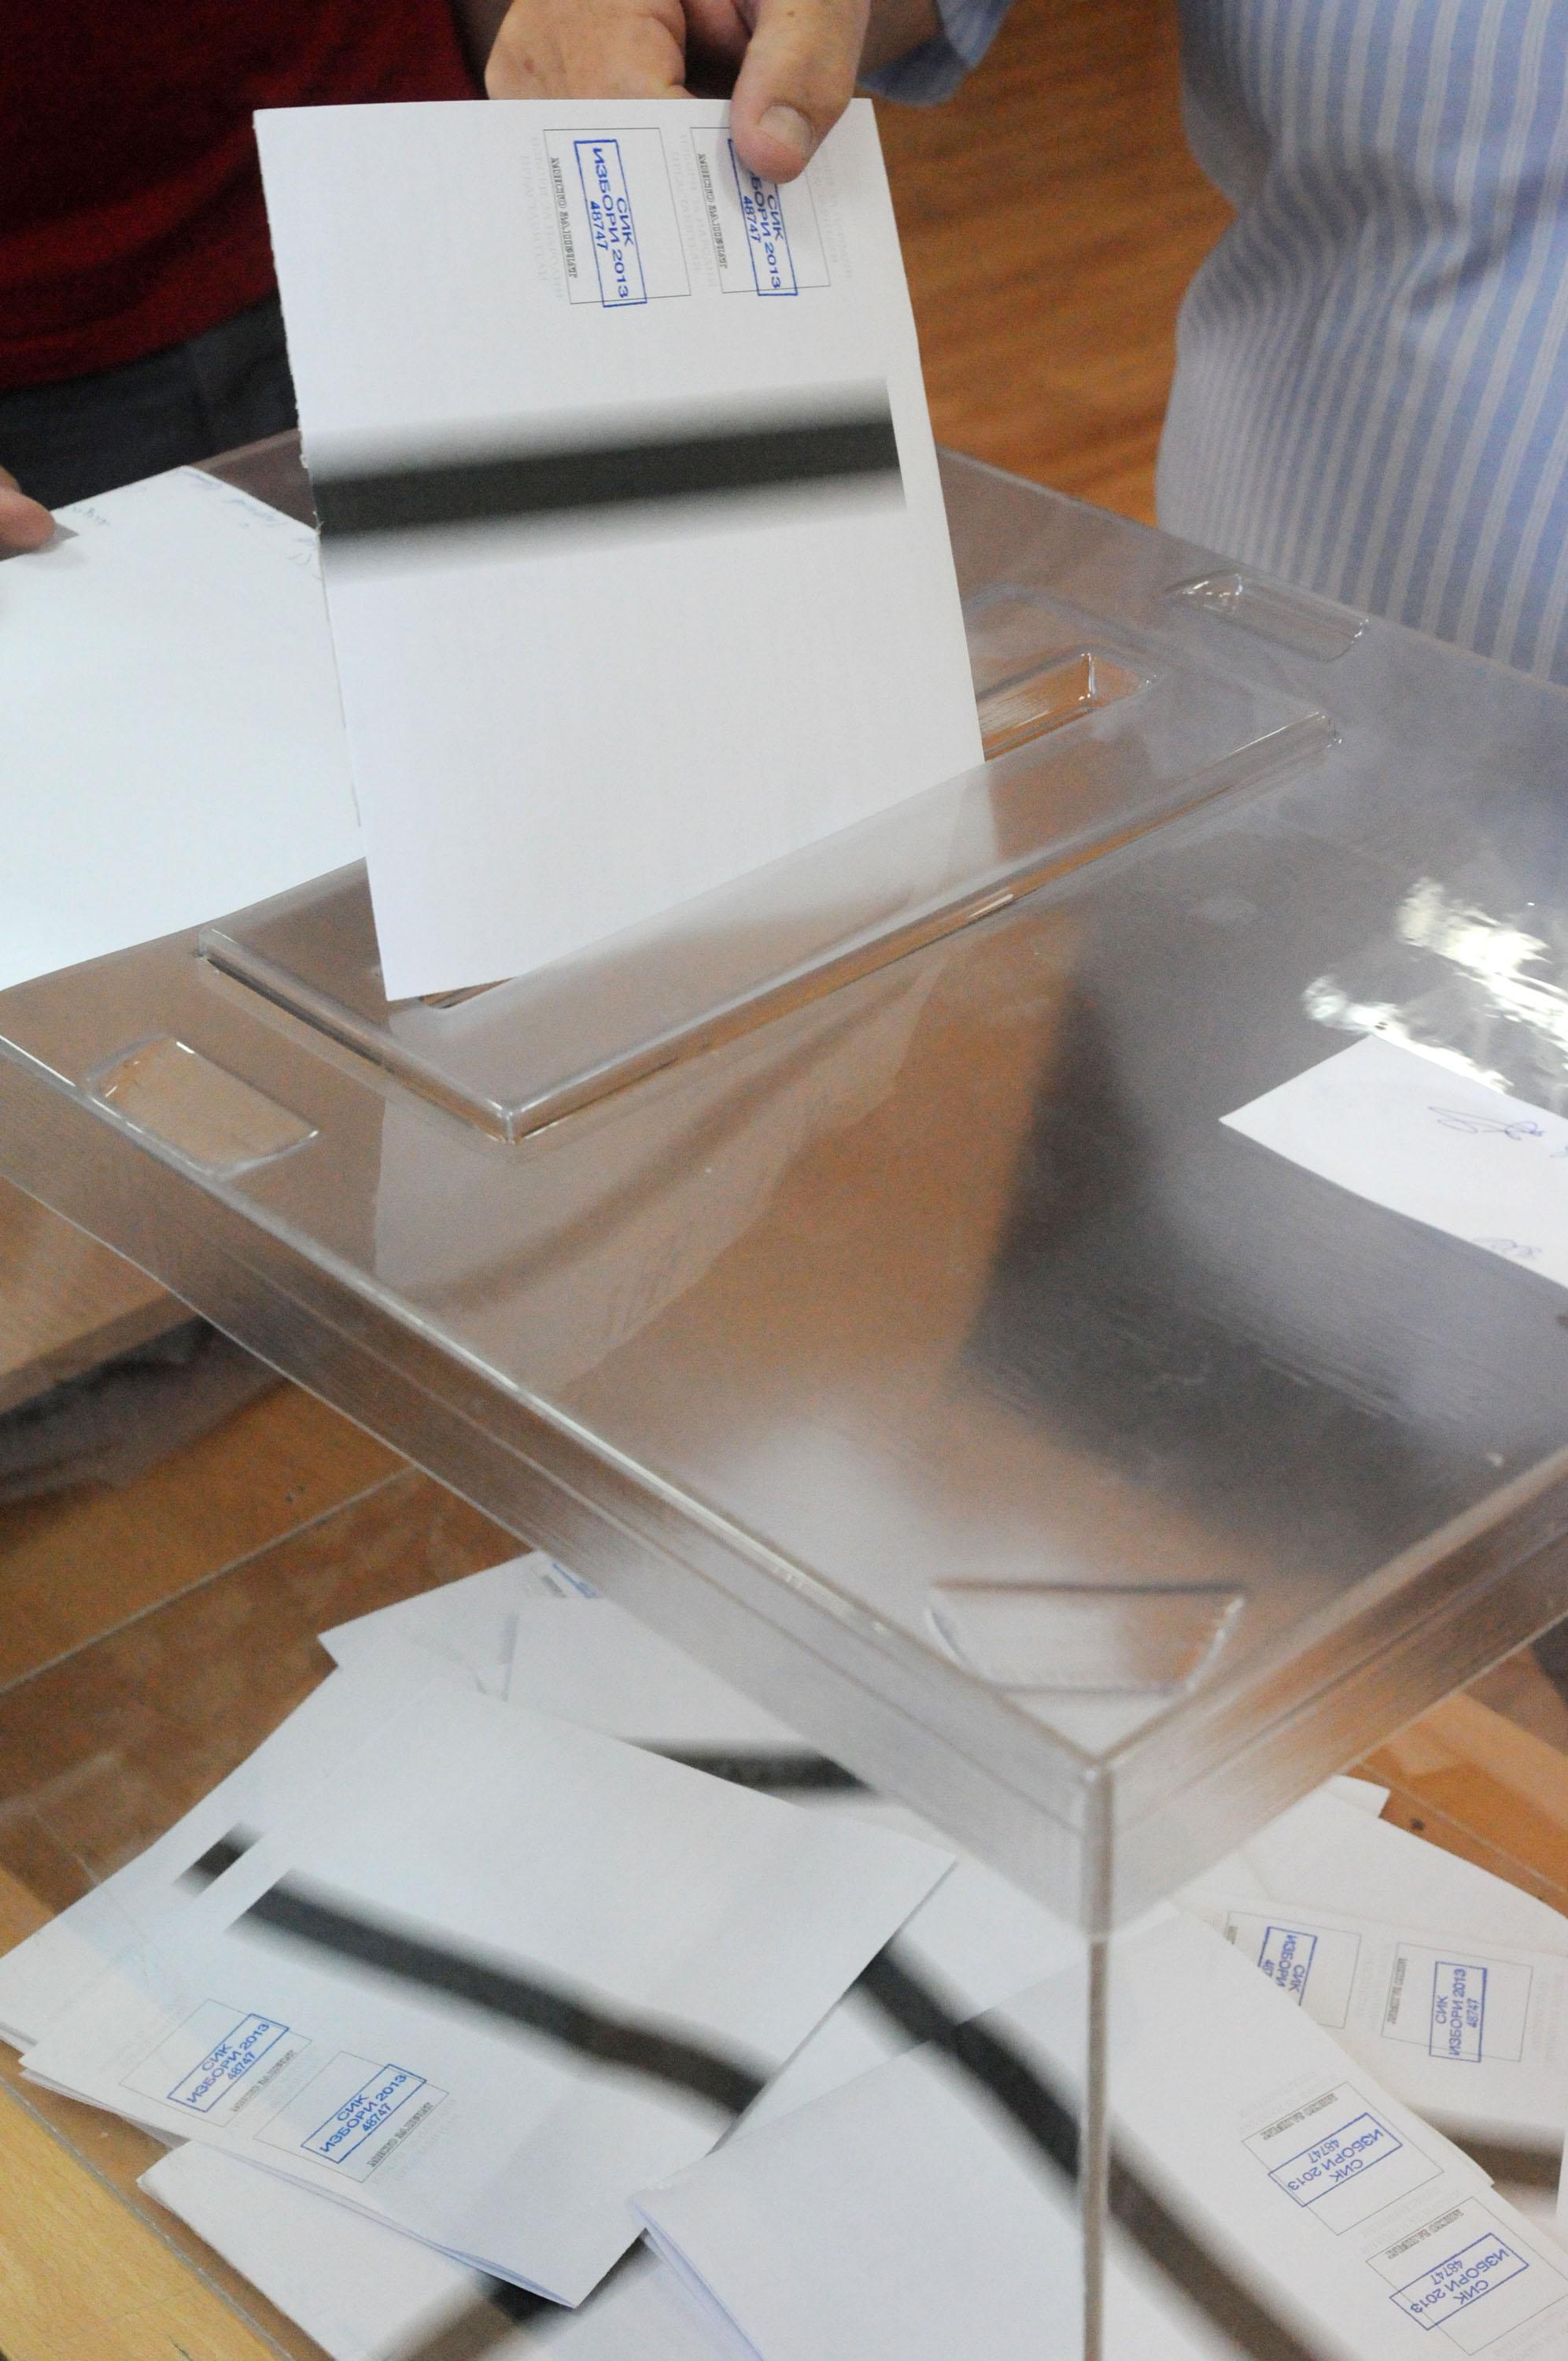 Частични местни избори се проведоха в 7 населени места в страната